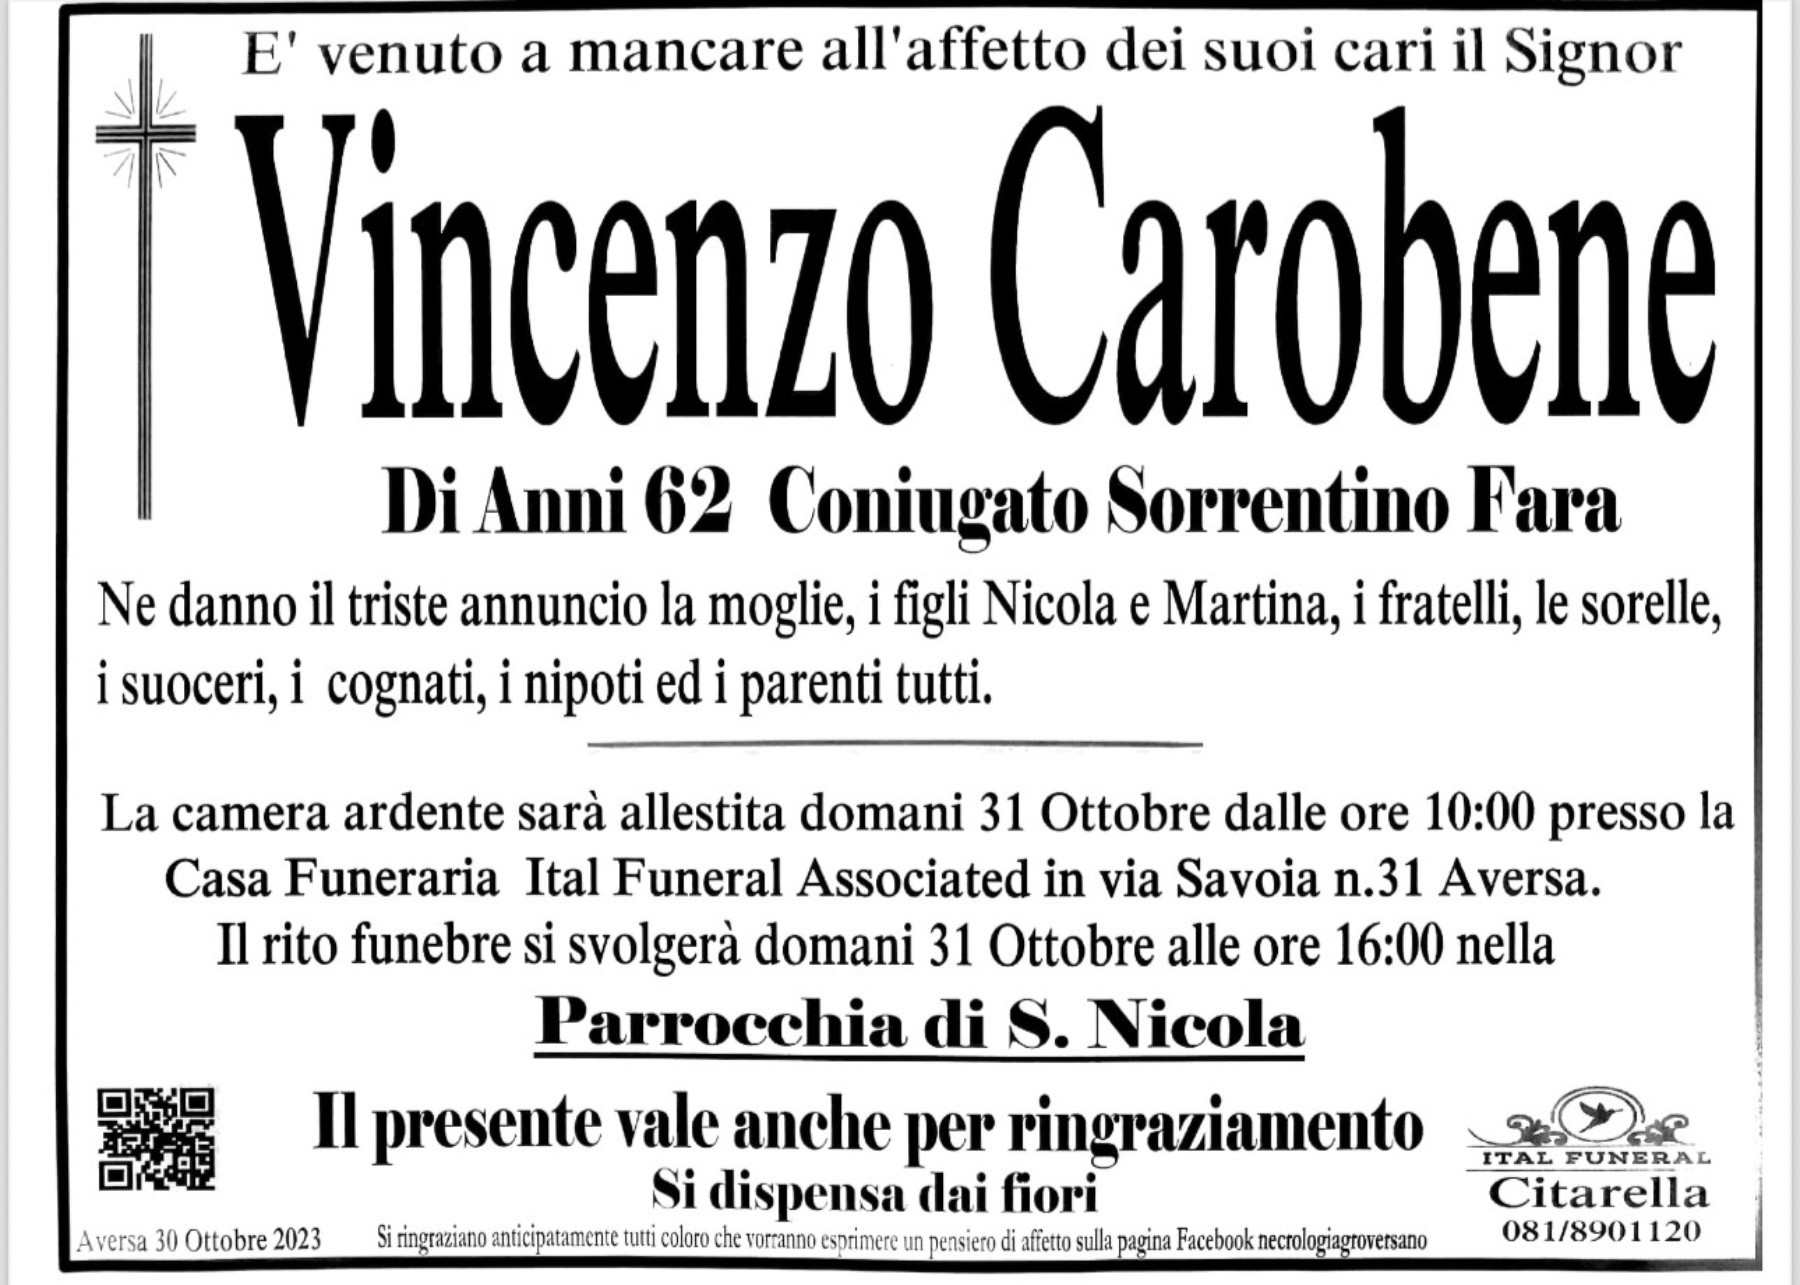 Vincenzo Carobene